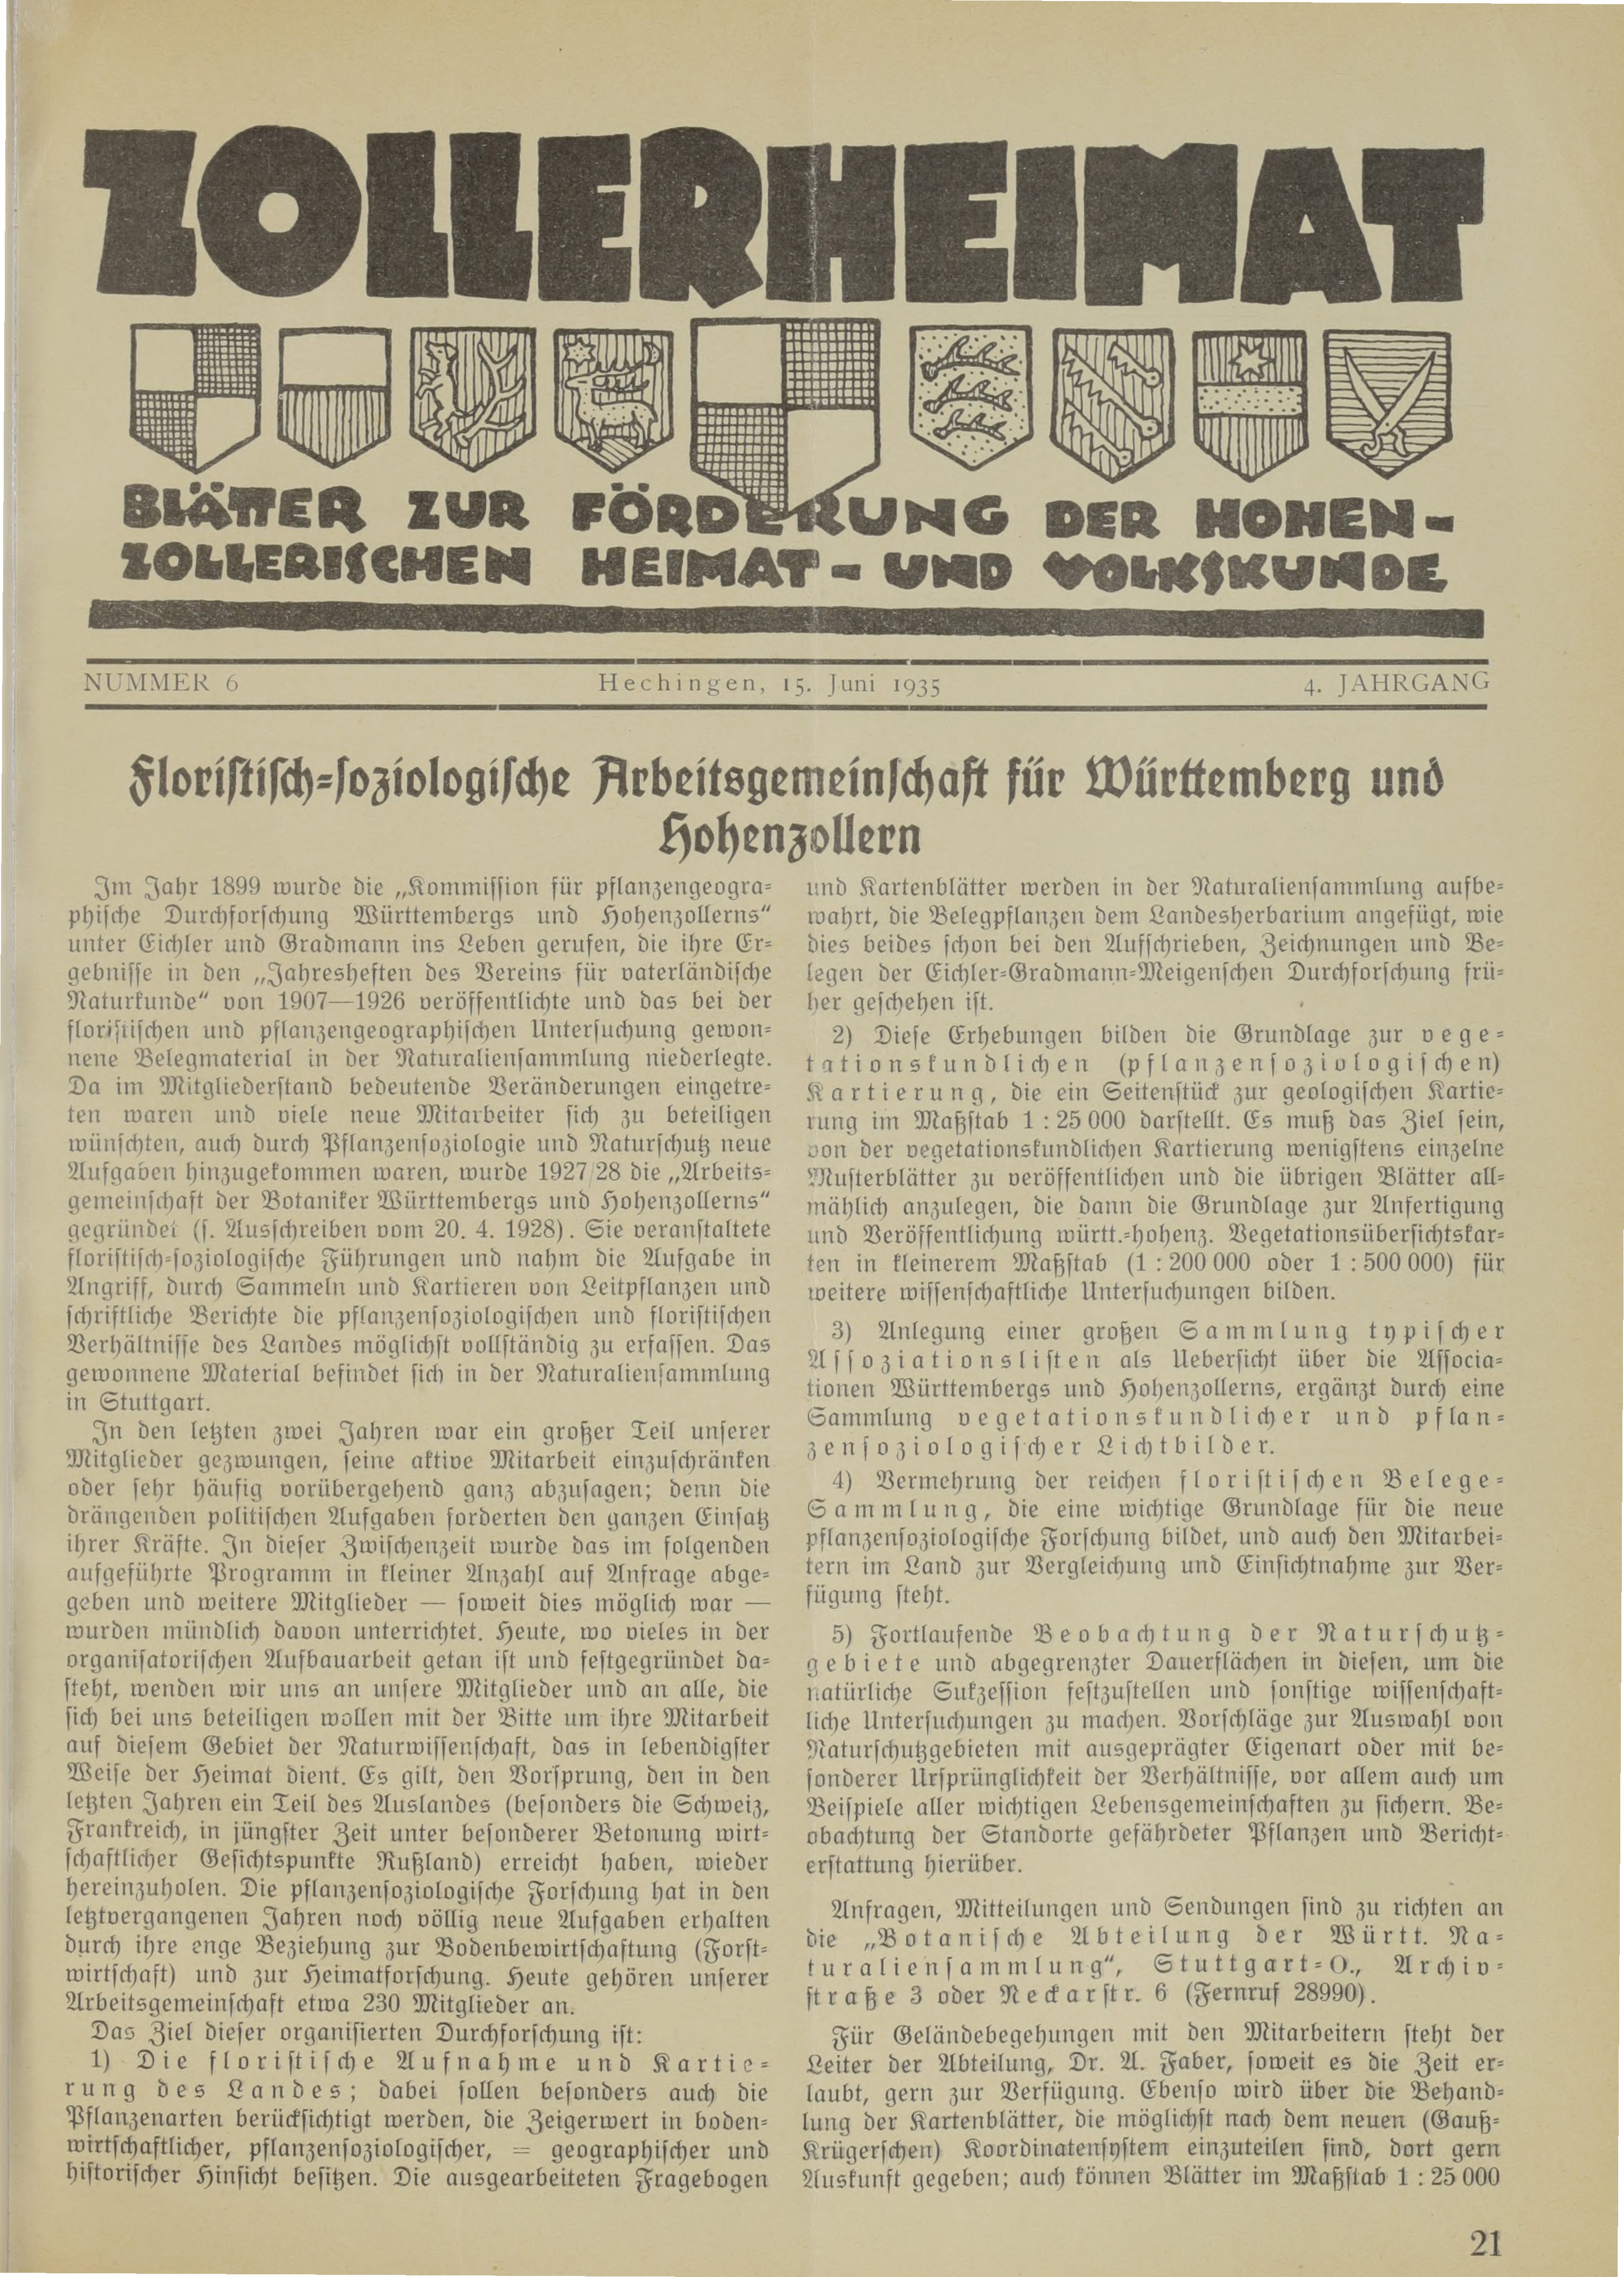                     Ansehen Bd. 4 Nr. 6 (1935): Zollerheimat
                